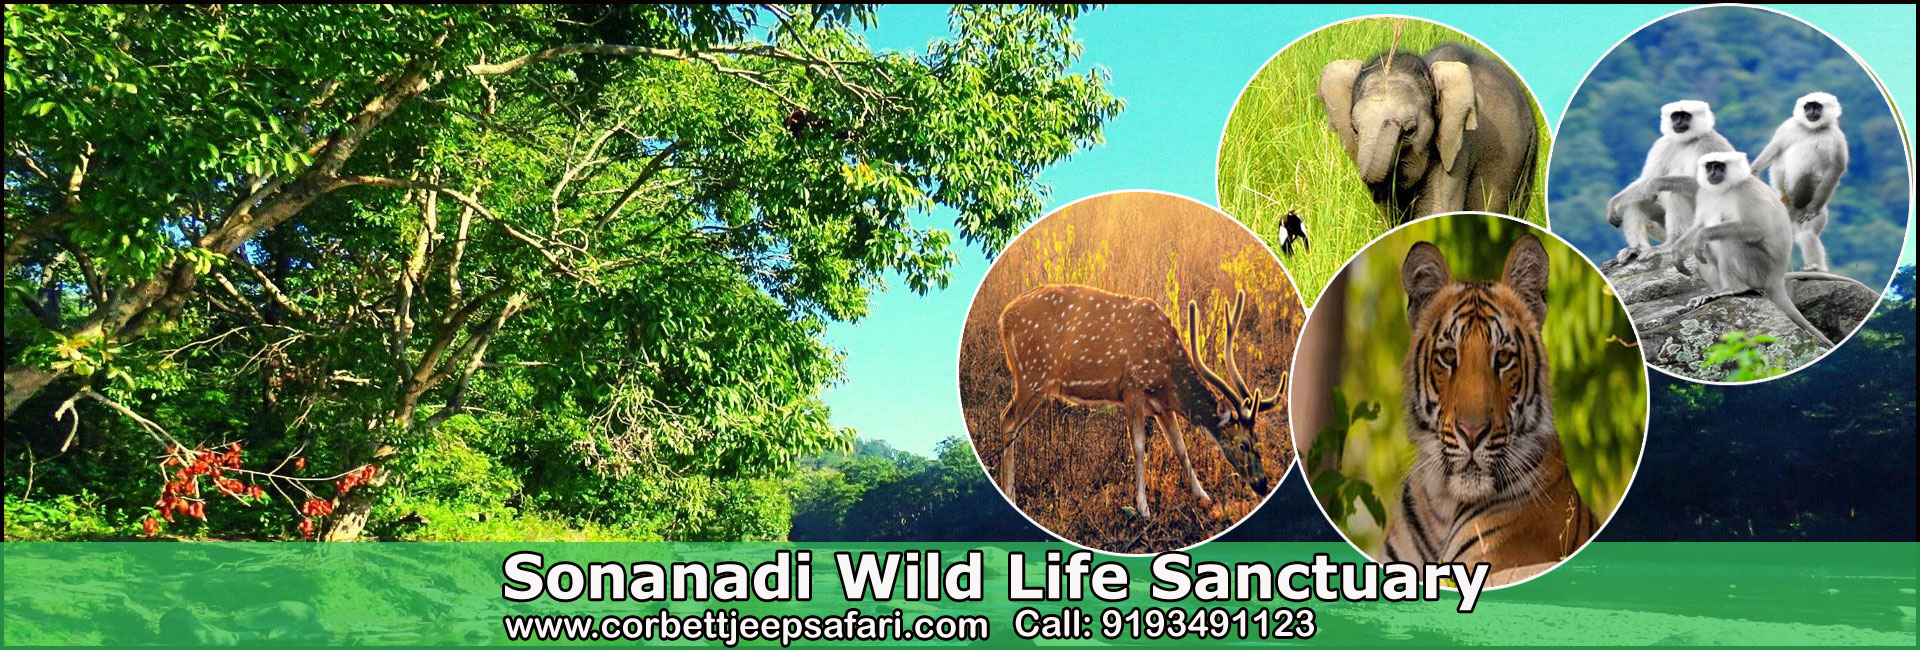 Sonanadi Safari Zone